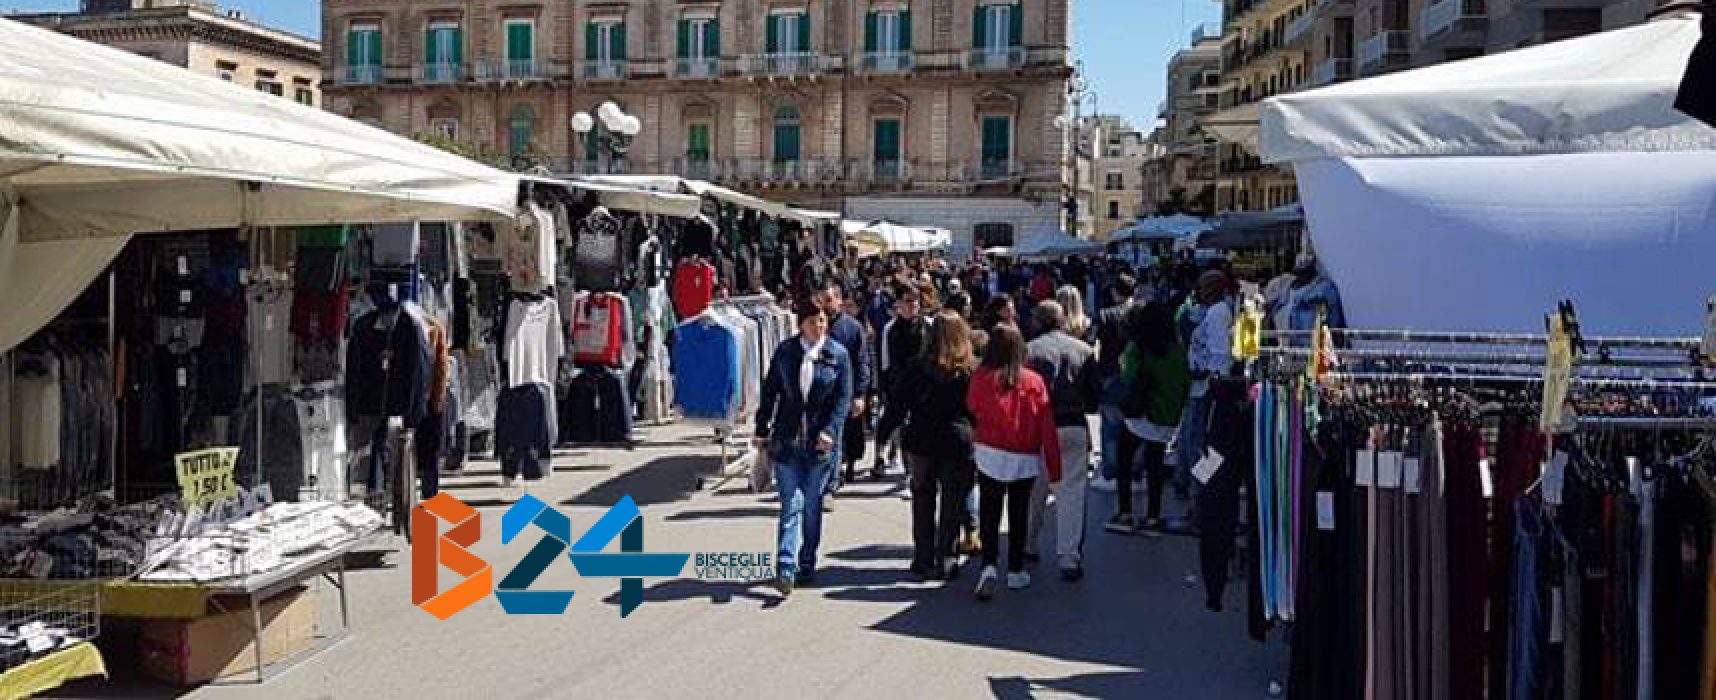 Nuovo appuntamento con il mercato straordinario in piazza Vittorio Emanuele